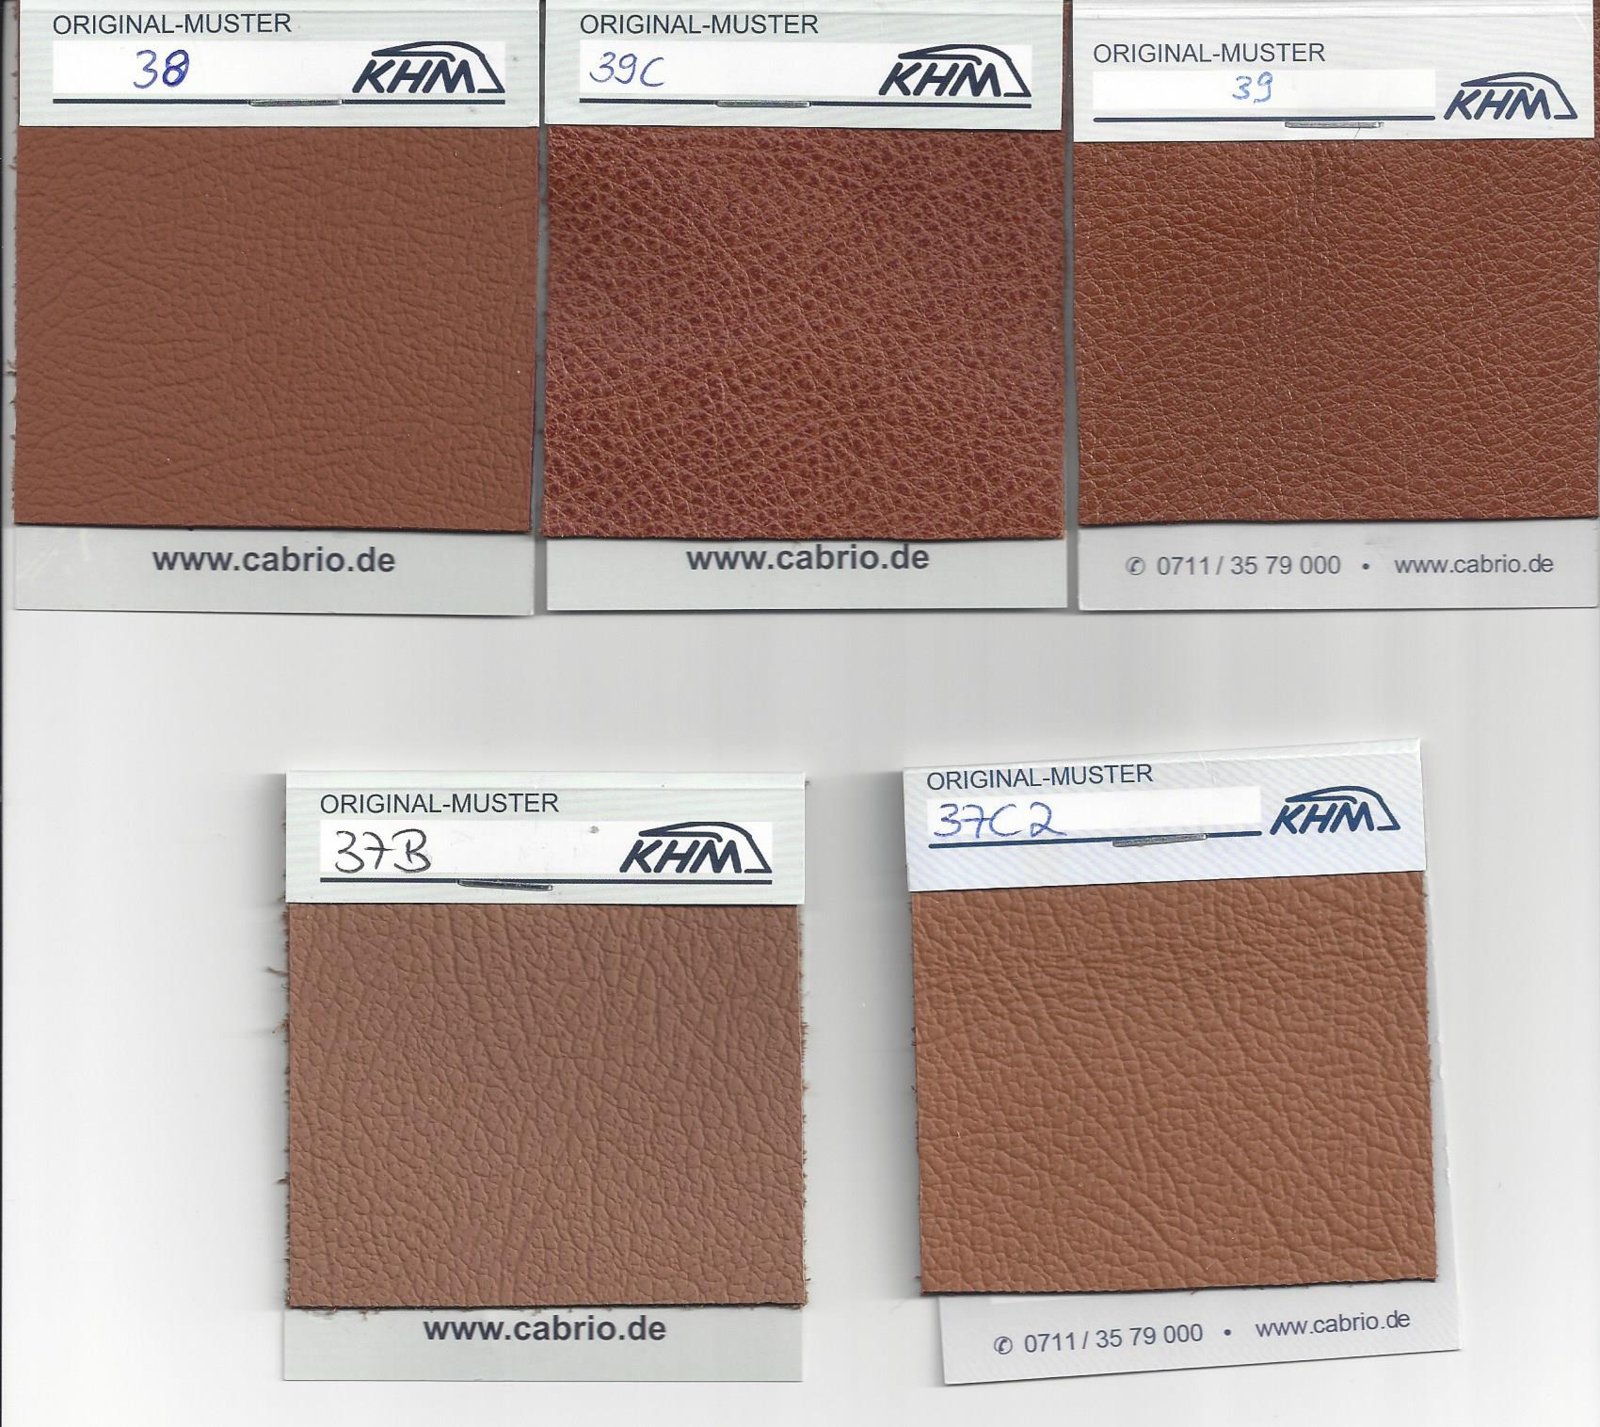 KHM Leather Samples.jpg